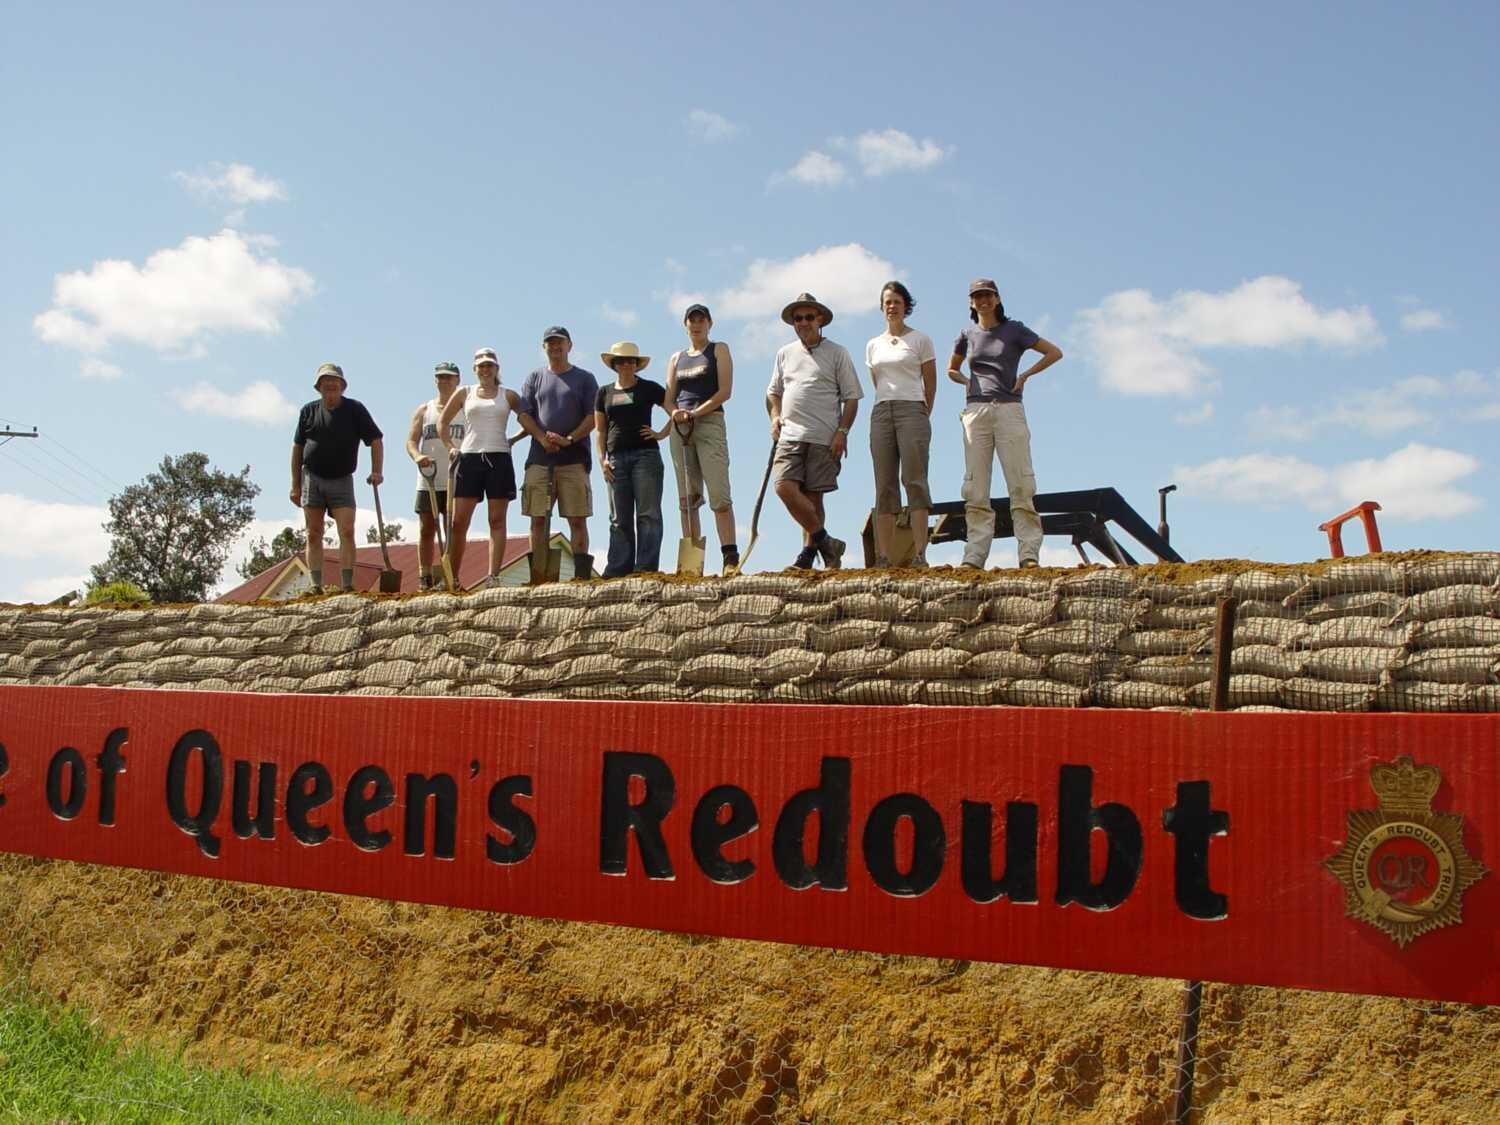 Queen's Redoubt volunteers celebrate